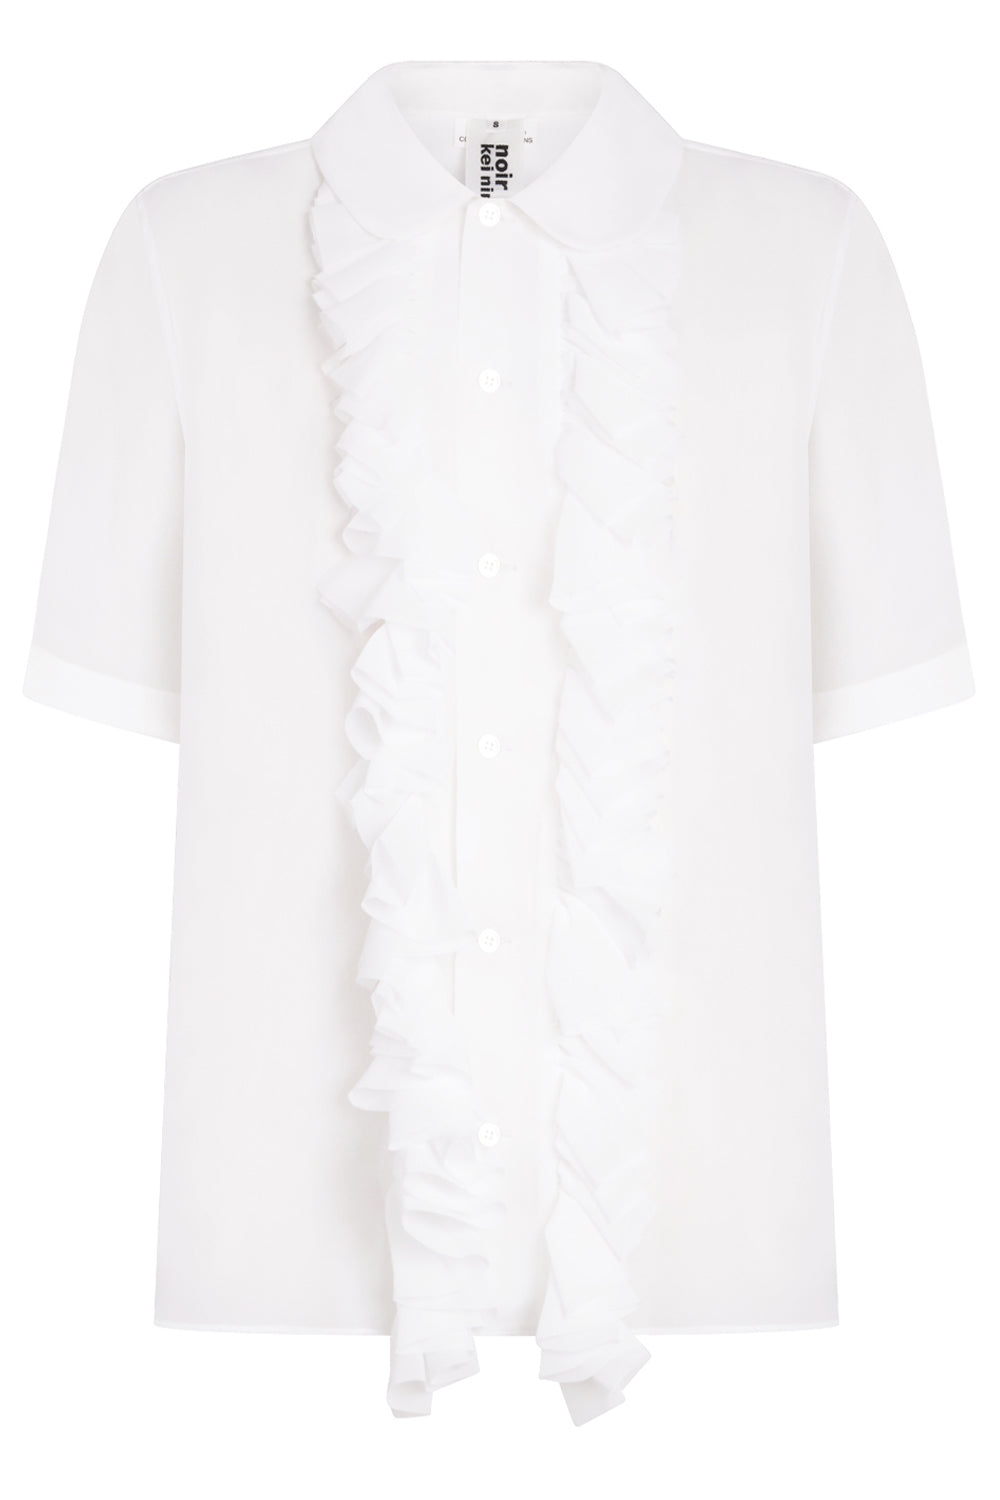 NOIR KEI NINOMIYA RTW Sheer Ruffle Detail S/S Shirt | White